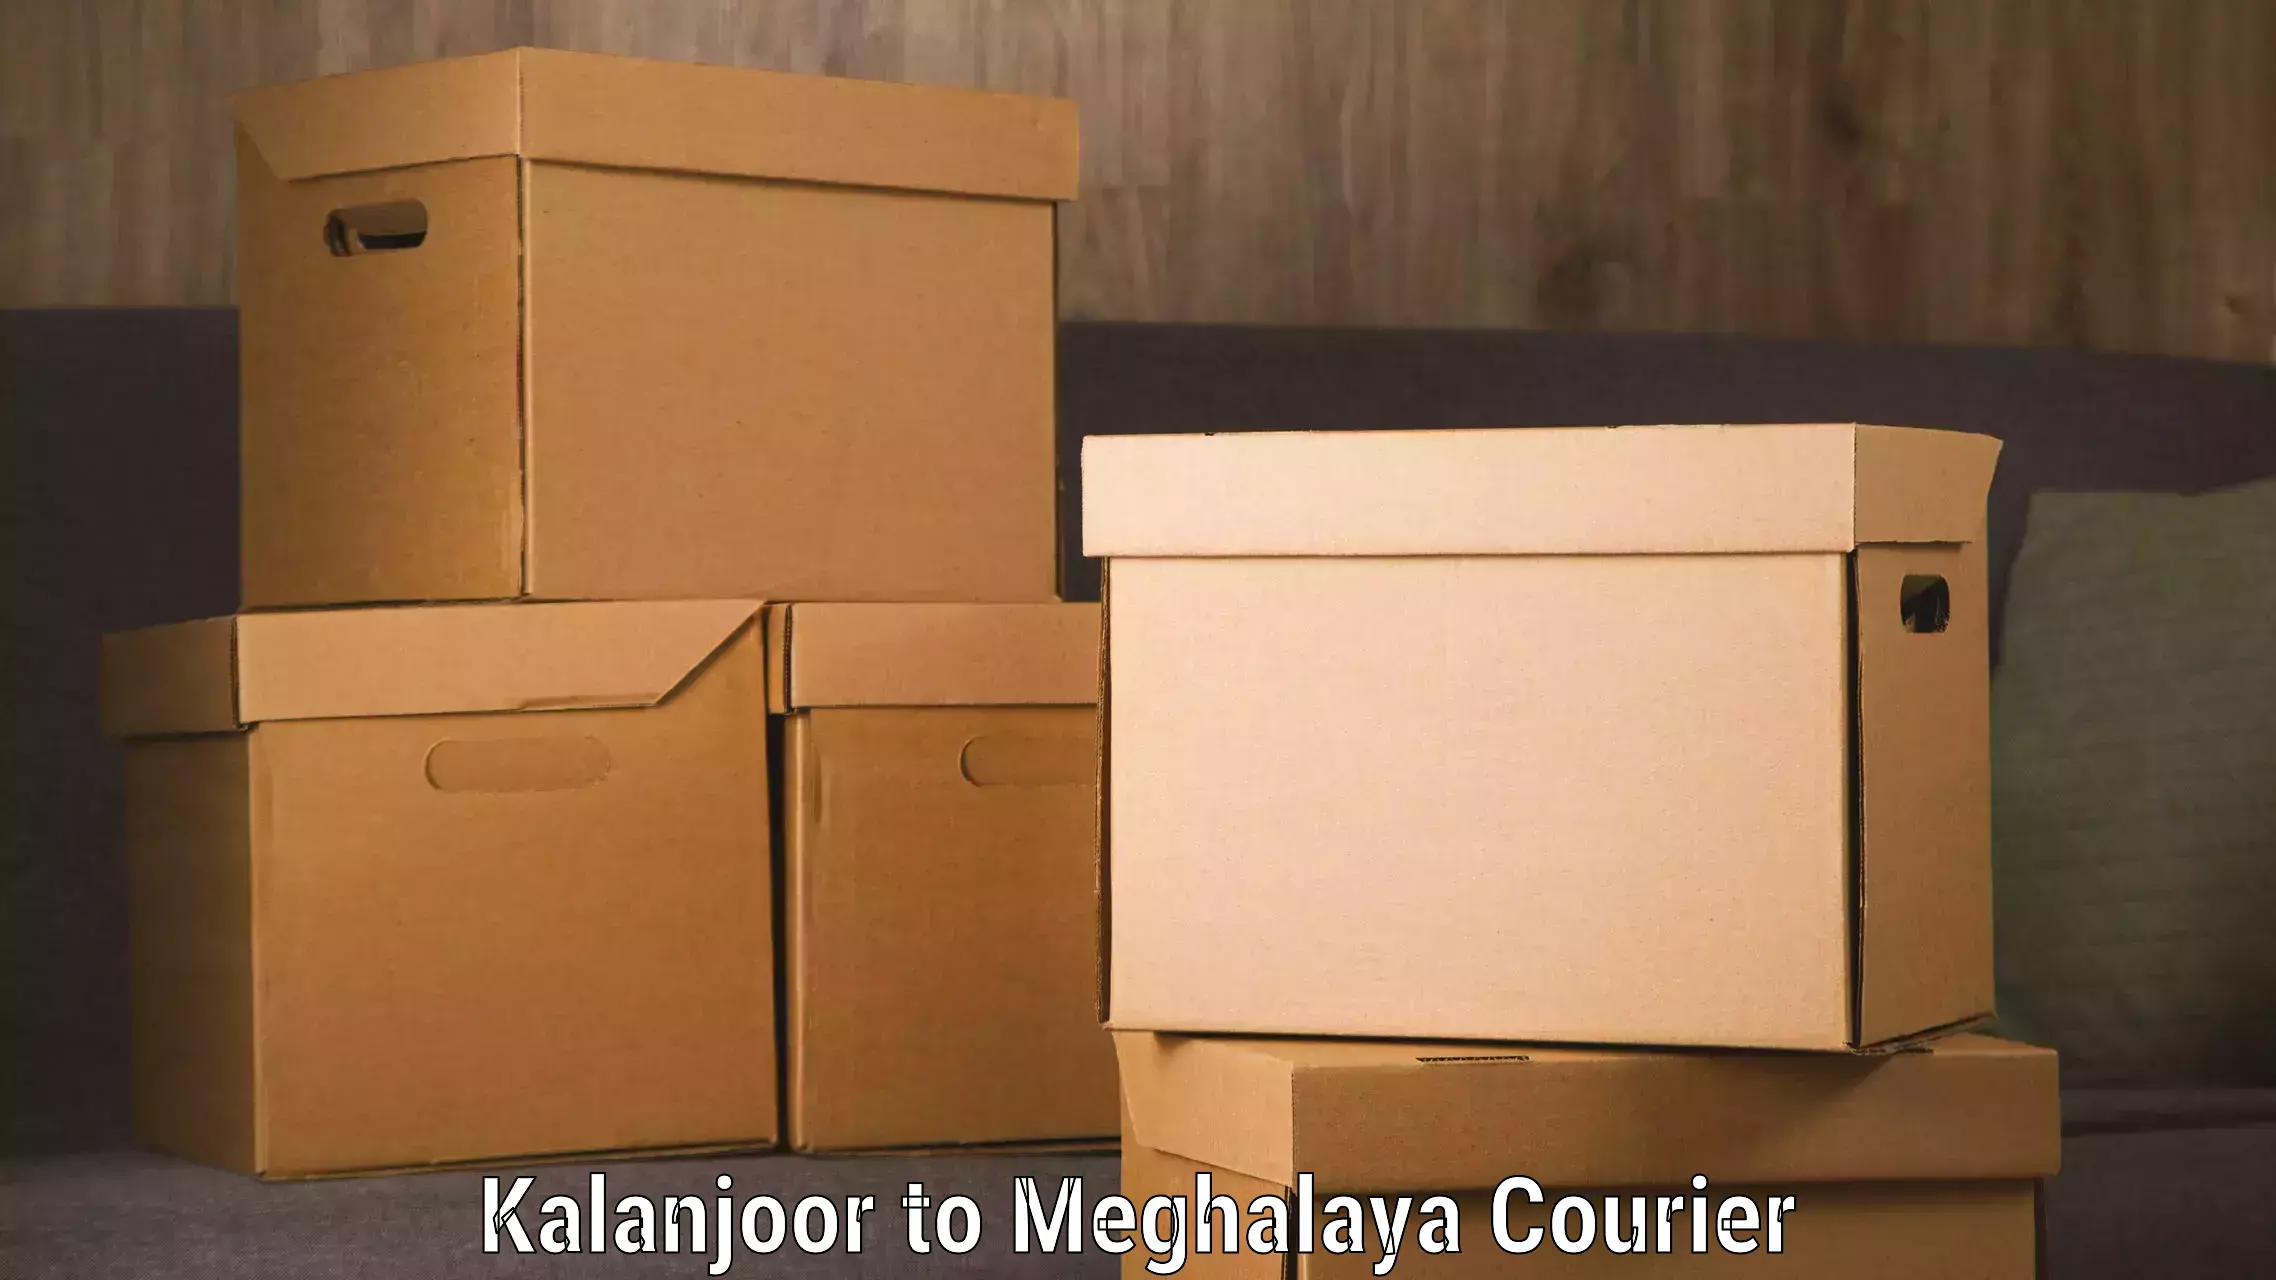 International courier rates Kalanjoor to Meghalaya